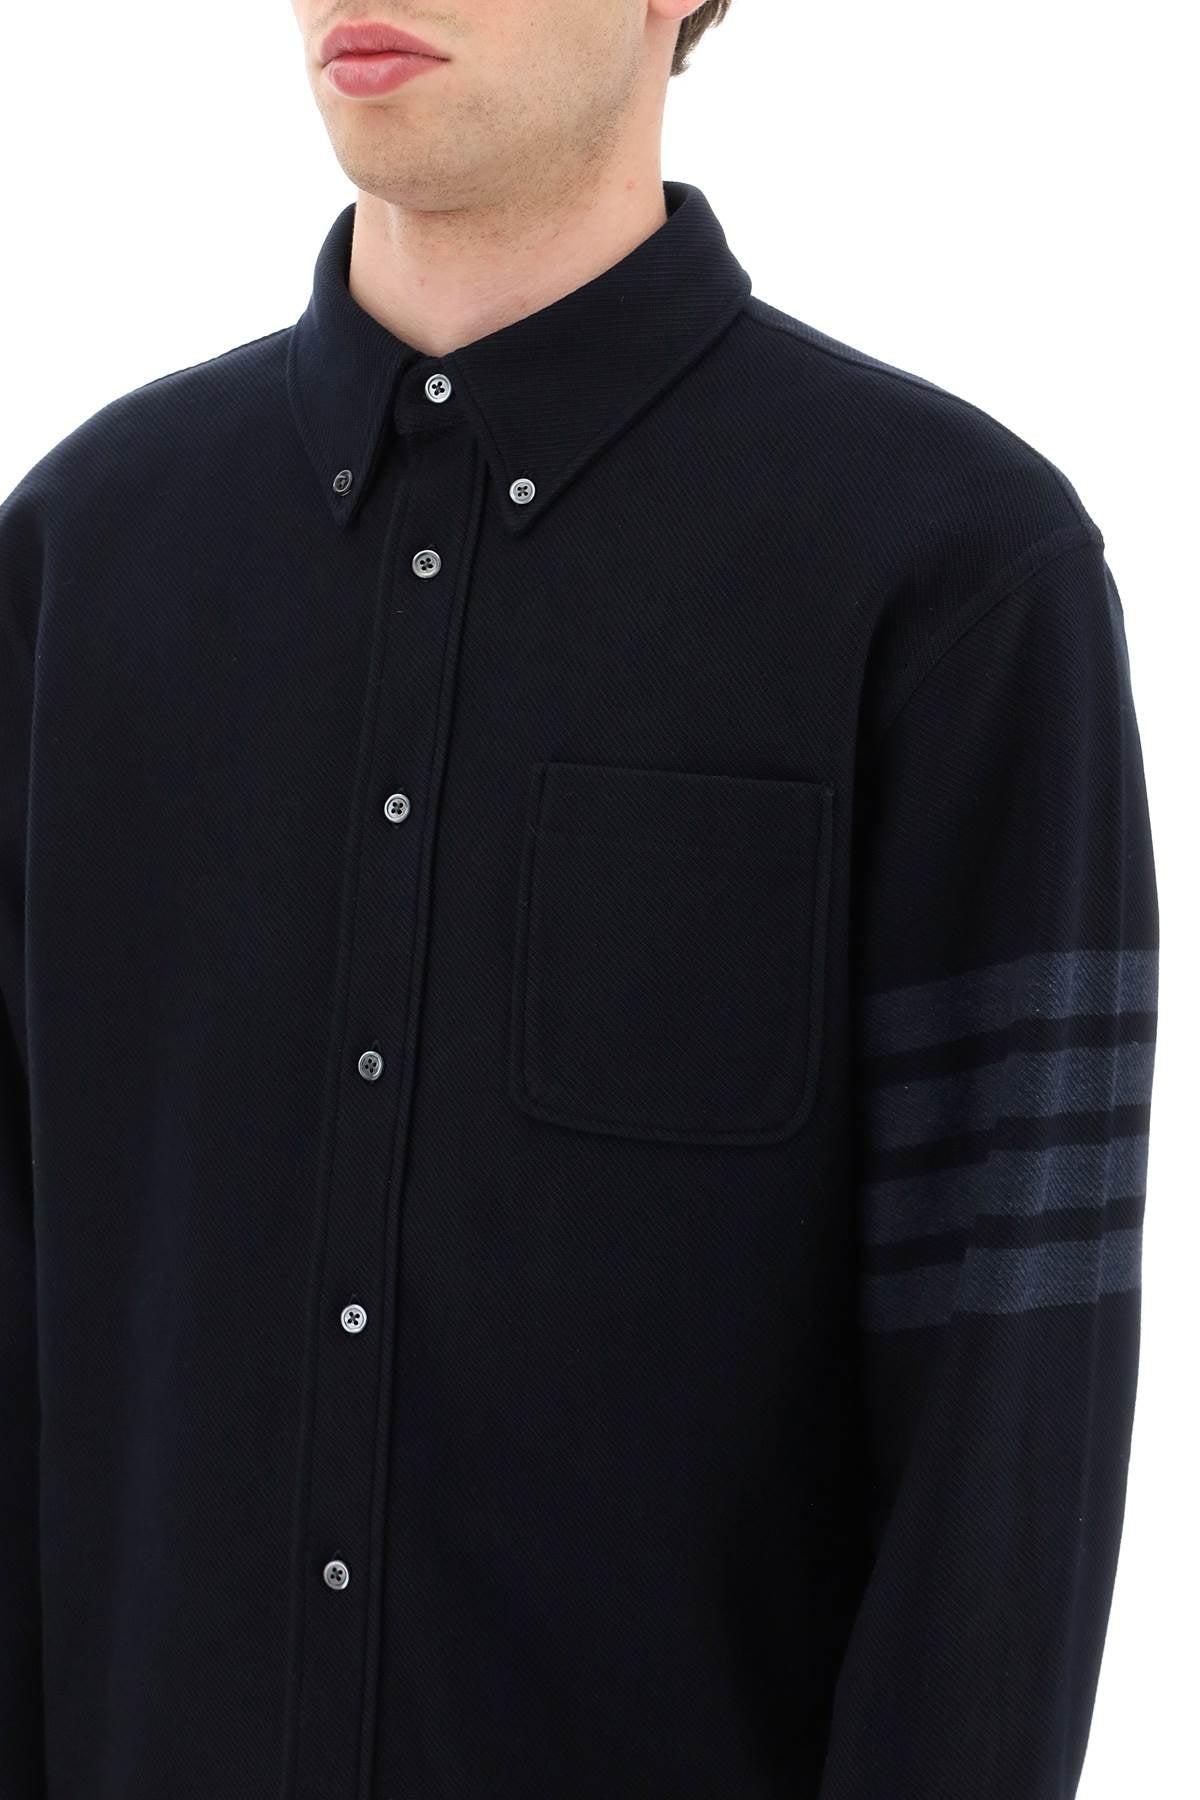 Thom Browne Men's Double Face Melton Blouson Jacket